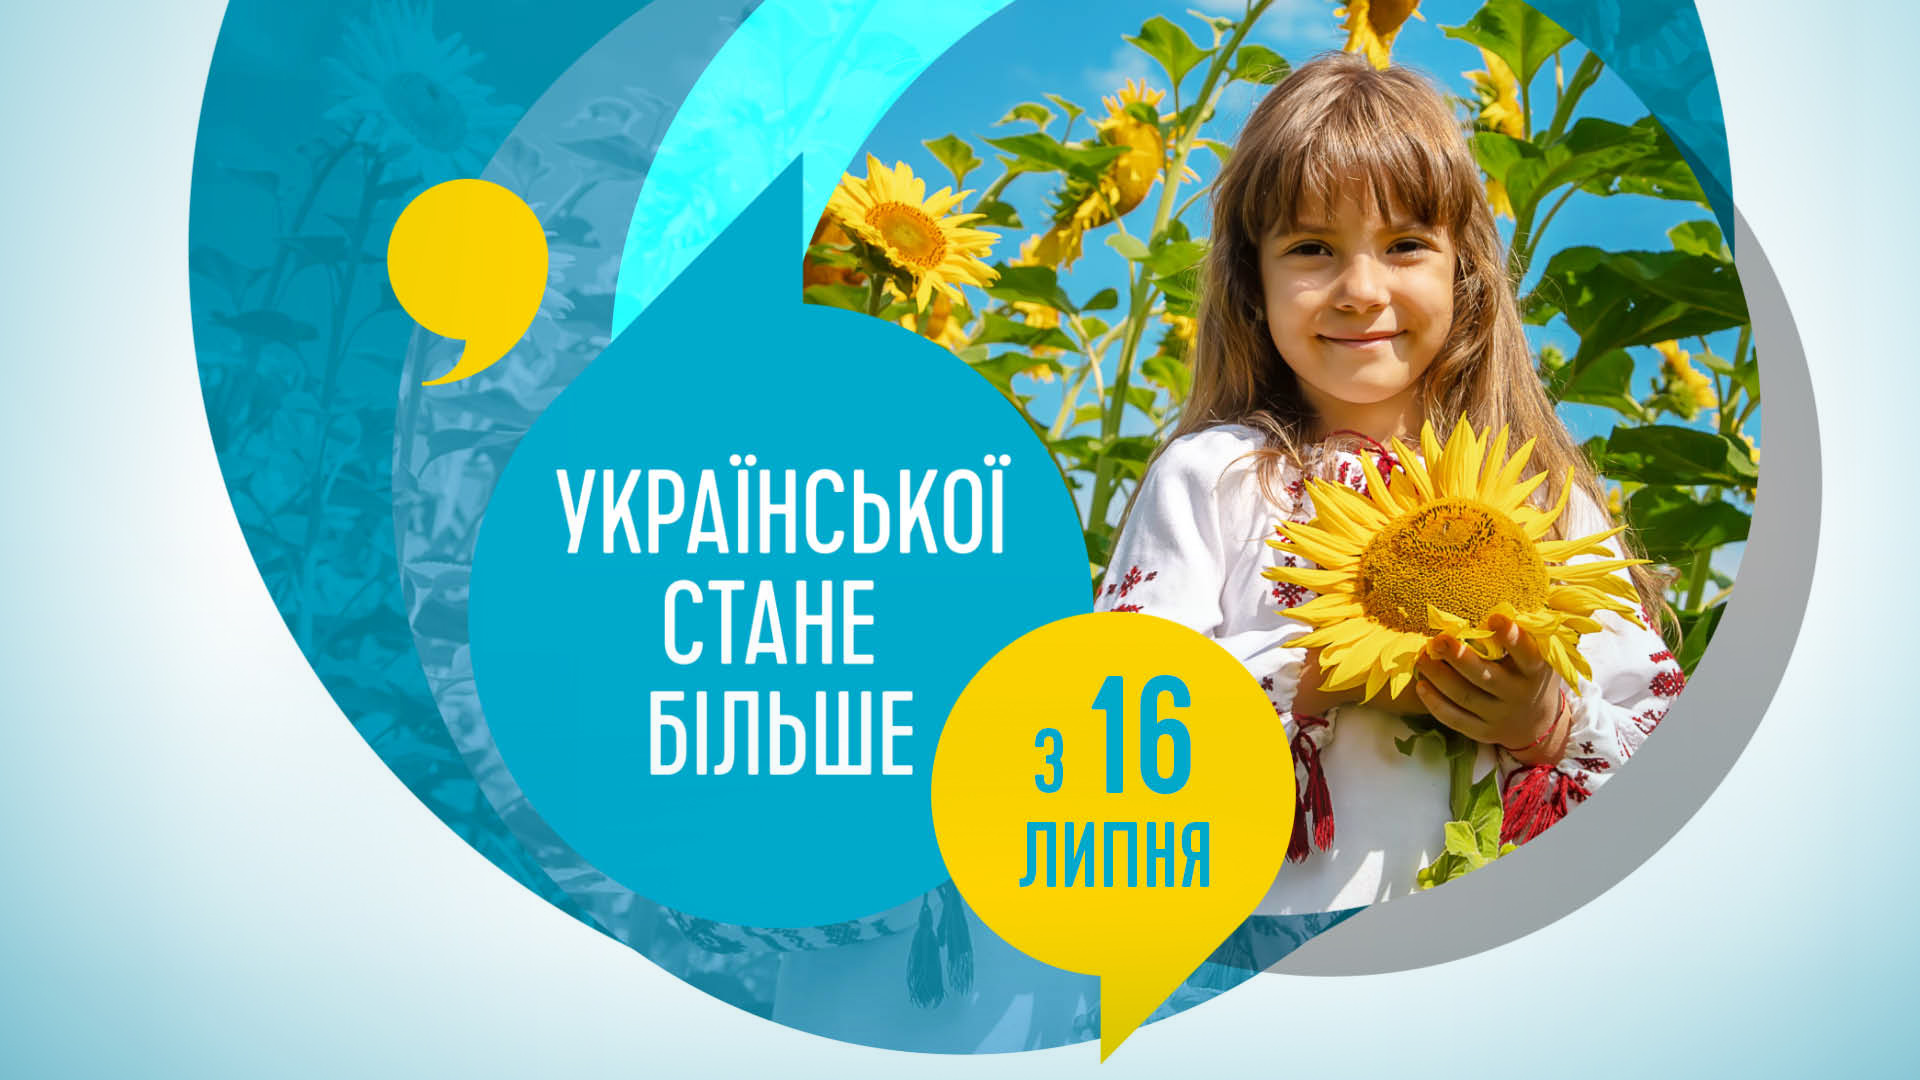 З 16 липня всі культурно-мистецькі та розважальні заходи проводитимуться українською